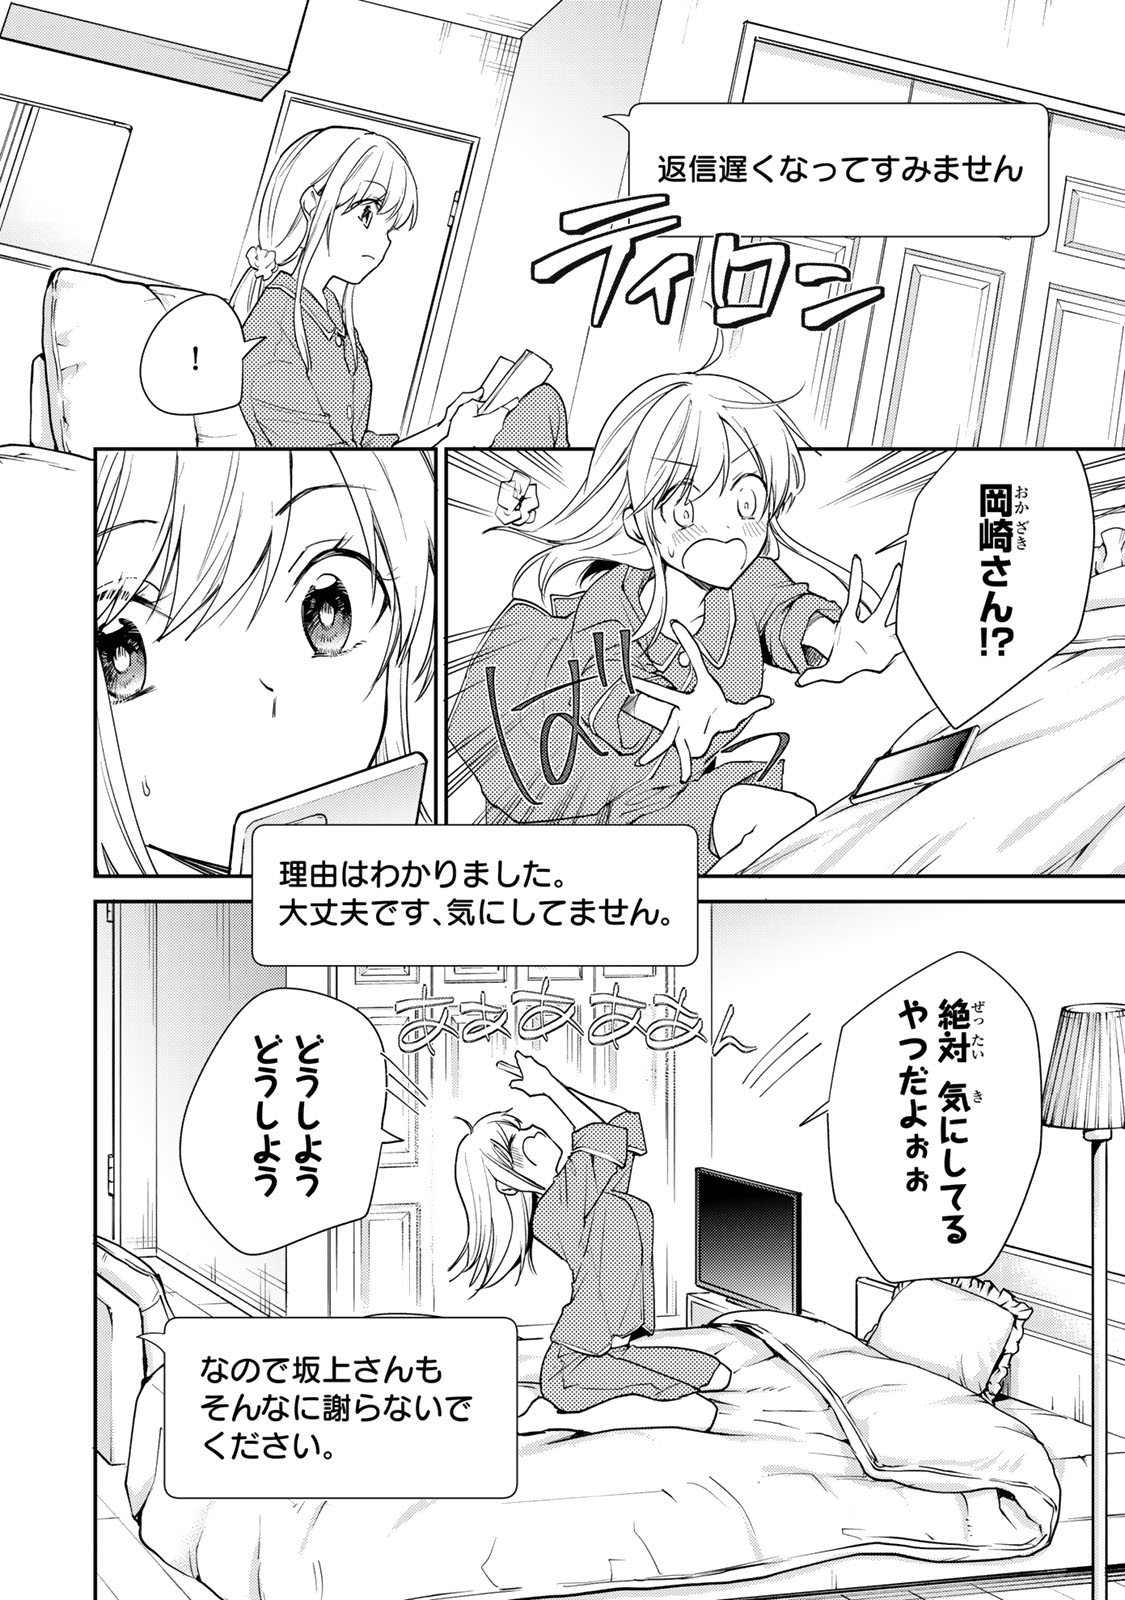 Kyou no Ohiru wa Nan desu ka? - Chapter 9 - Page 12